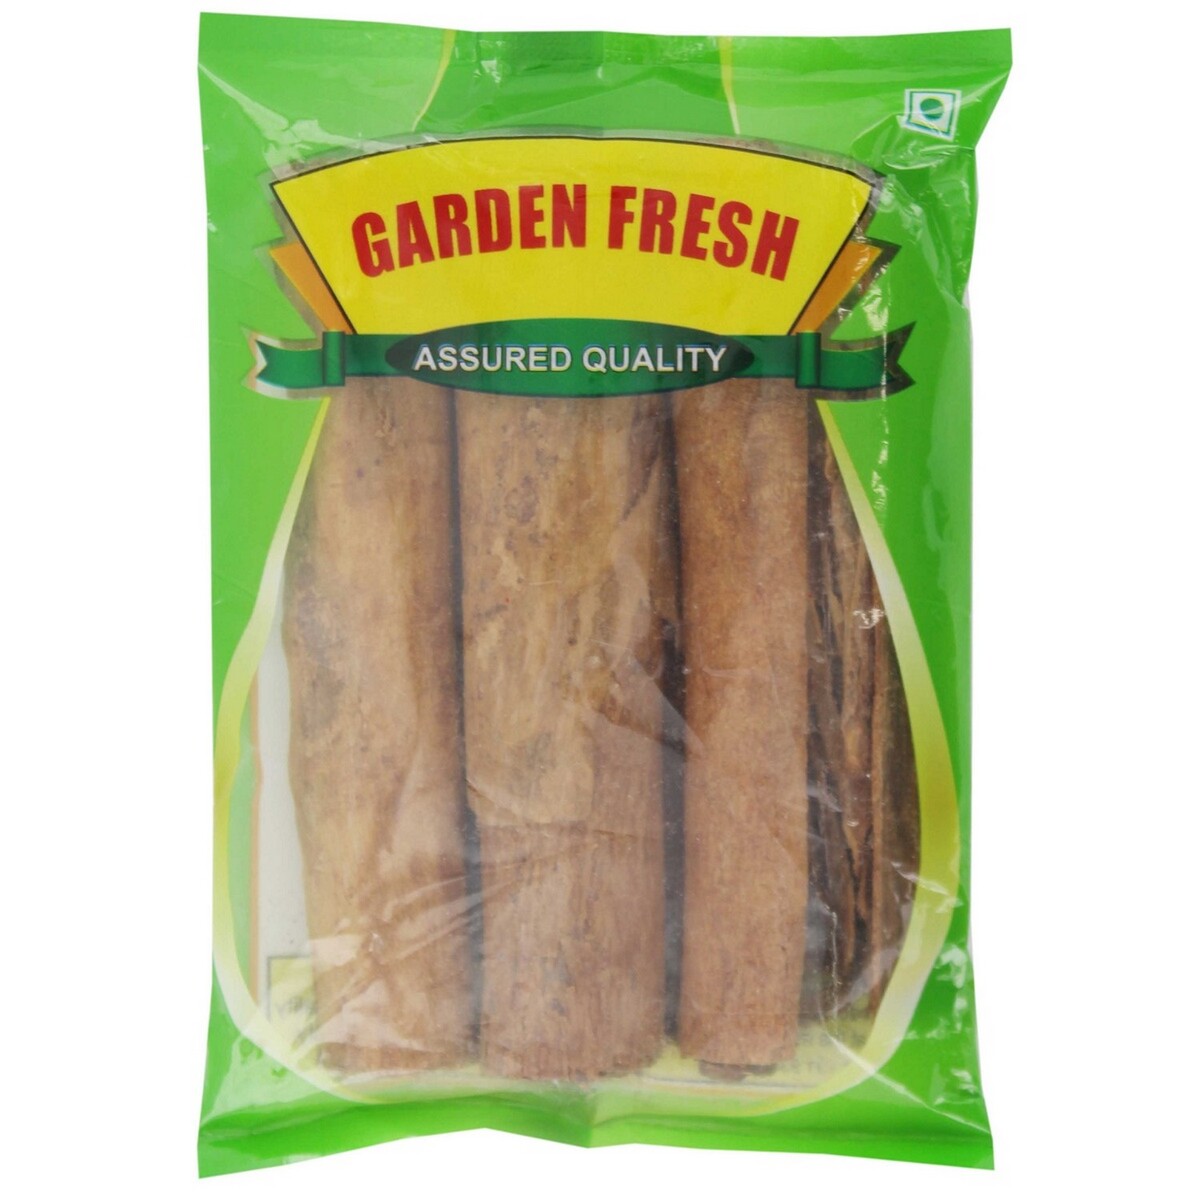 Garden Fresh Cinnamon Stick 50g